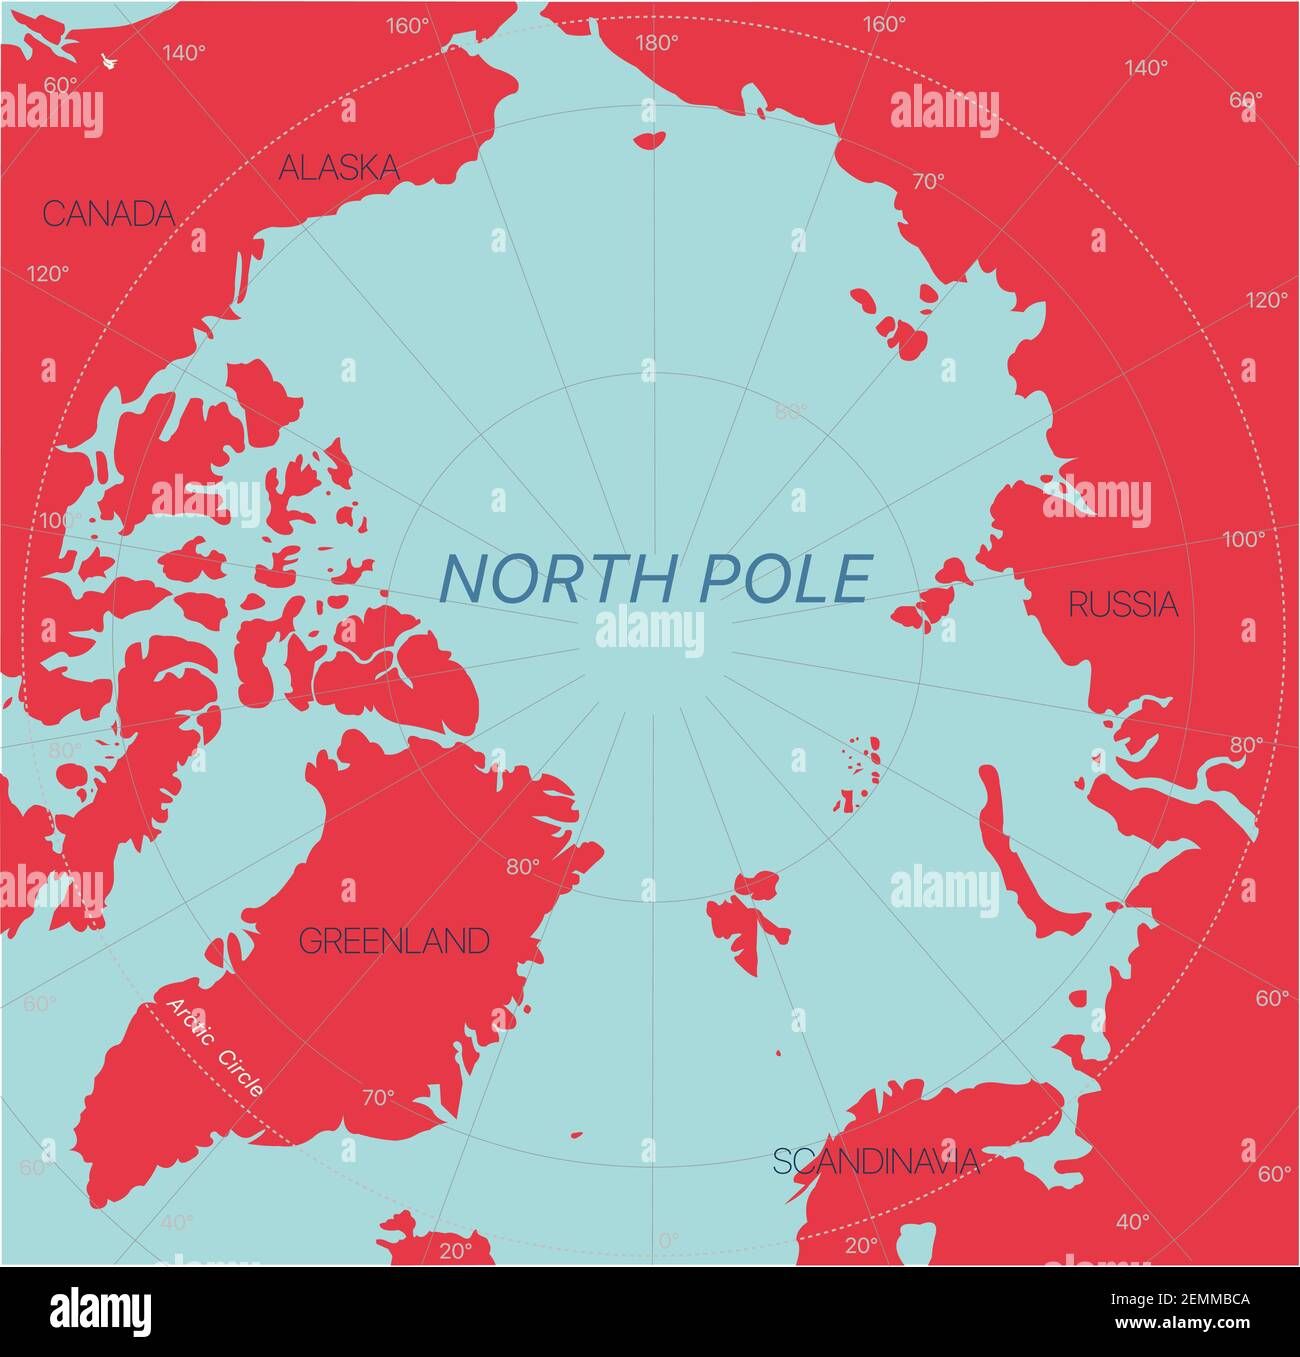 Pôle Nord carte modifiable détaillée avec régions sites géographiques. Fichier vectoriel EPS-10 Illustration de Vecteur